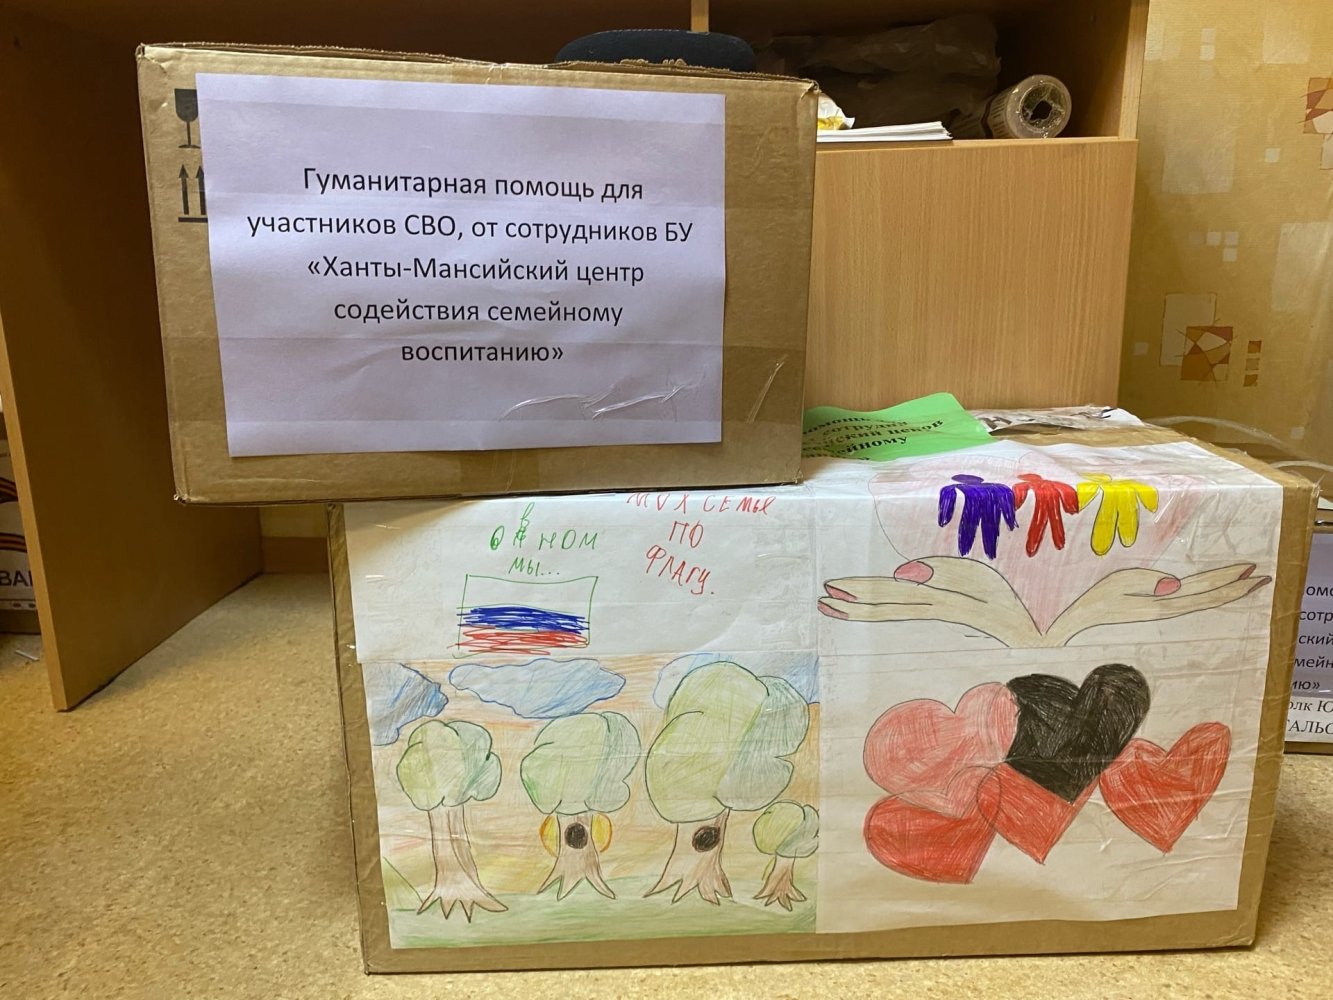 Ханты-Мансийский центр содействия семейному воспитанию присоединился к всероссийской акции #МЫВМЕСТЕ